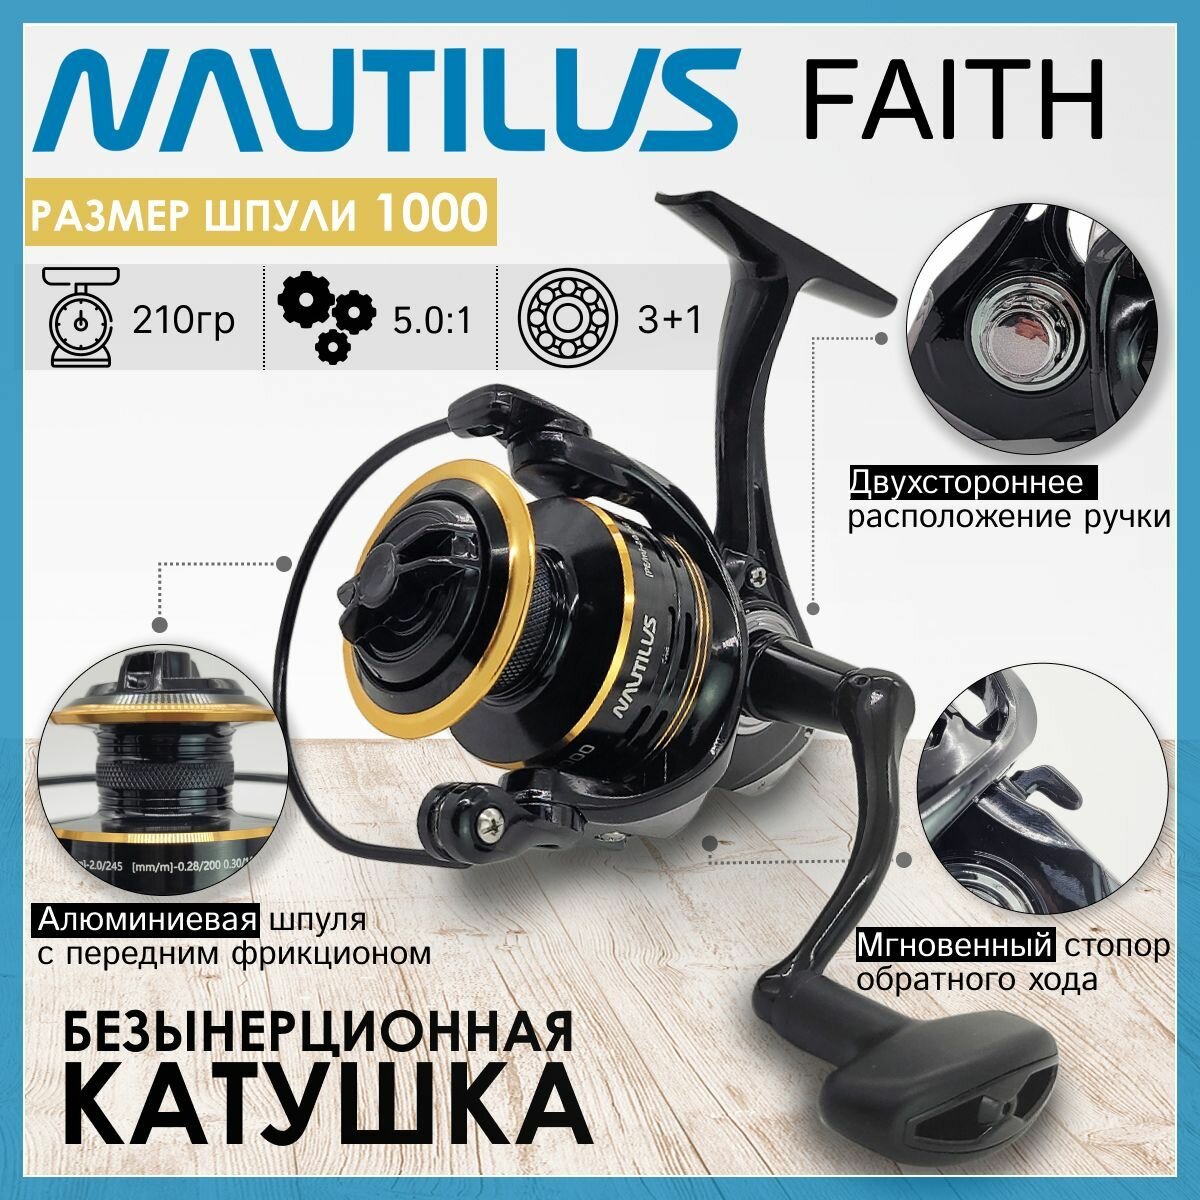 Катушка Nautilus FAITH 1000, с передним фрикционом